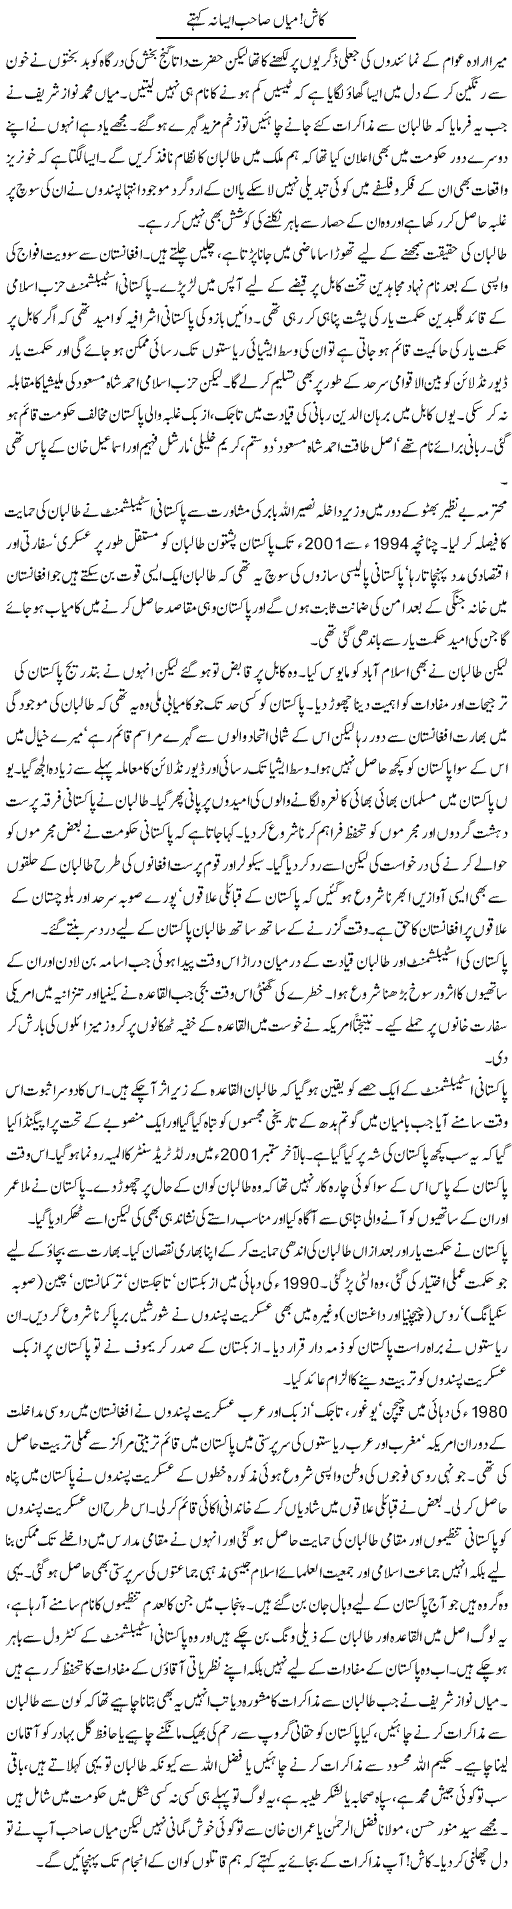 Mian Sahab Asa Kahte Express Column Latif Chaudhry 7 July 2010